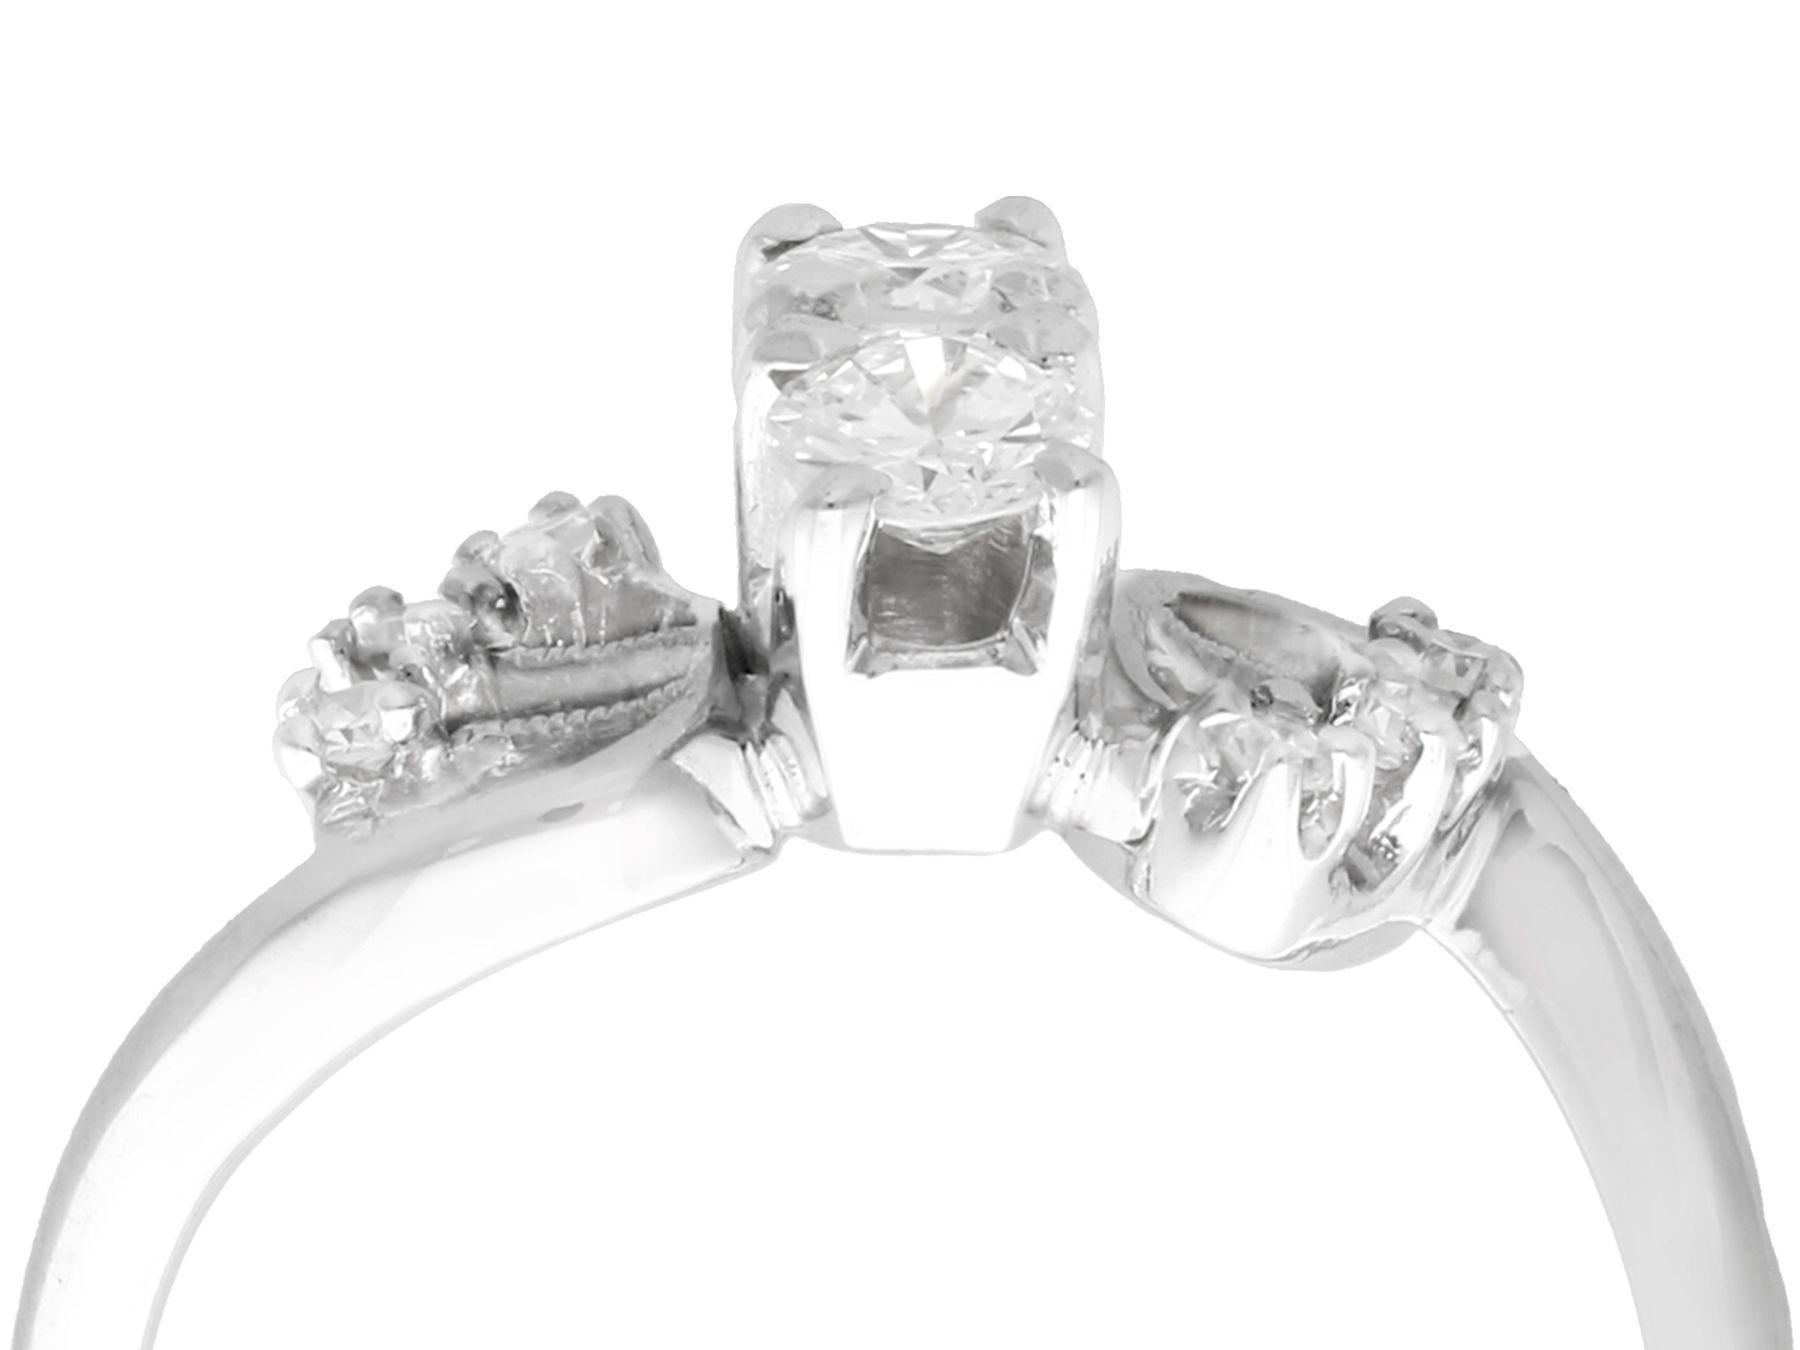 Une impressionnante bague torsadée en or blanc 14 carats et diamant de 0,59 carat, datant des années 1950, qui fait partie de nos diverses collections de bijoux anciens.

Cette belle et impressionnante bague de soirée Art Déco en diamants a été